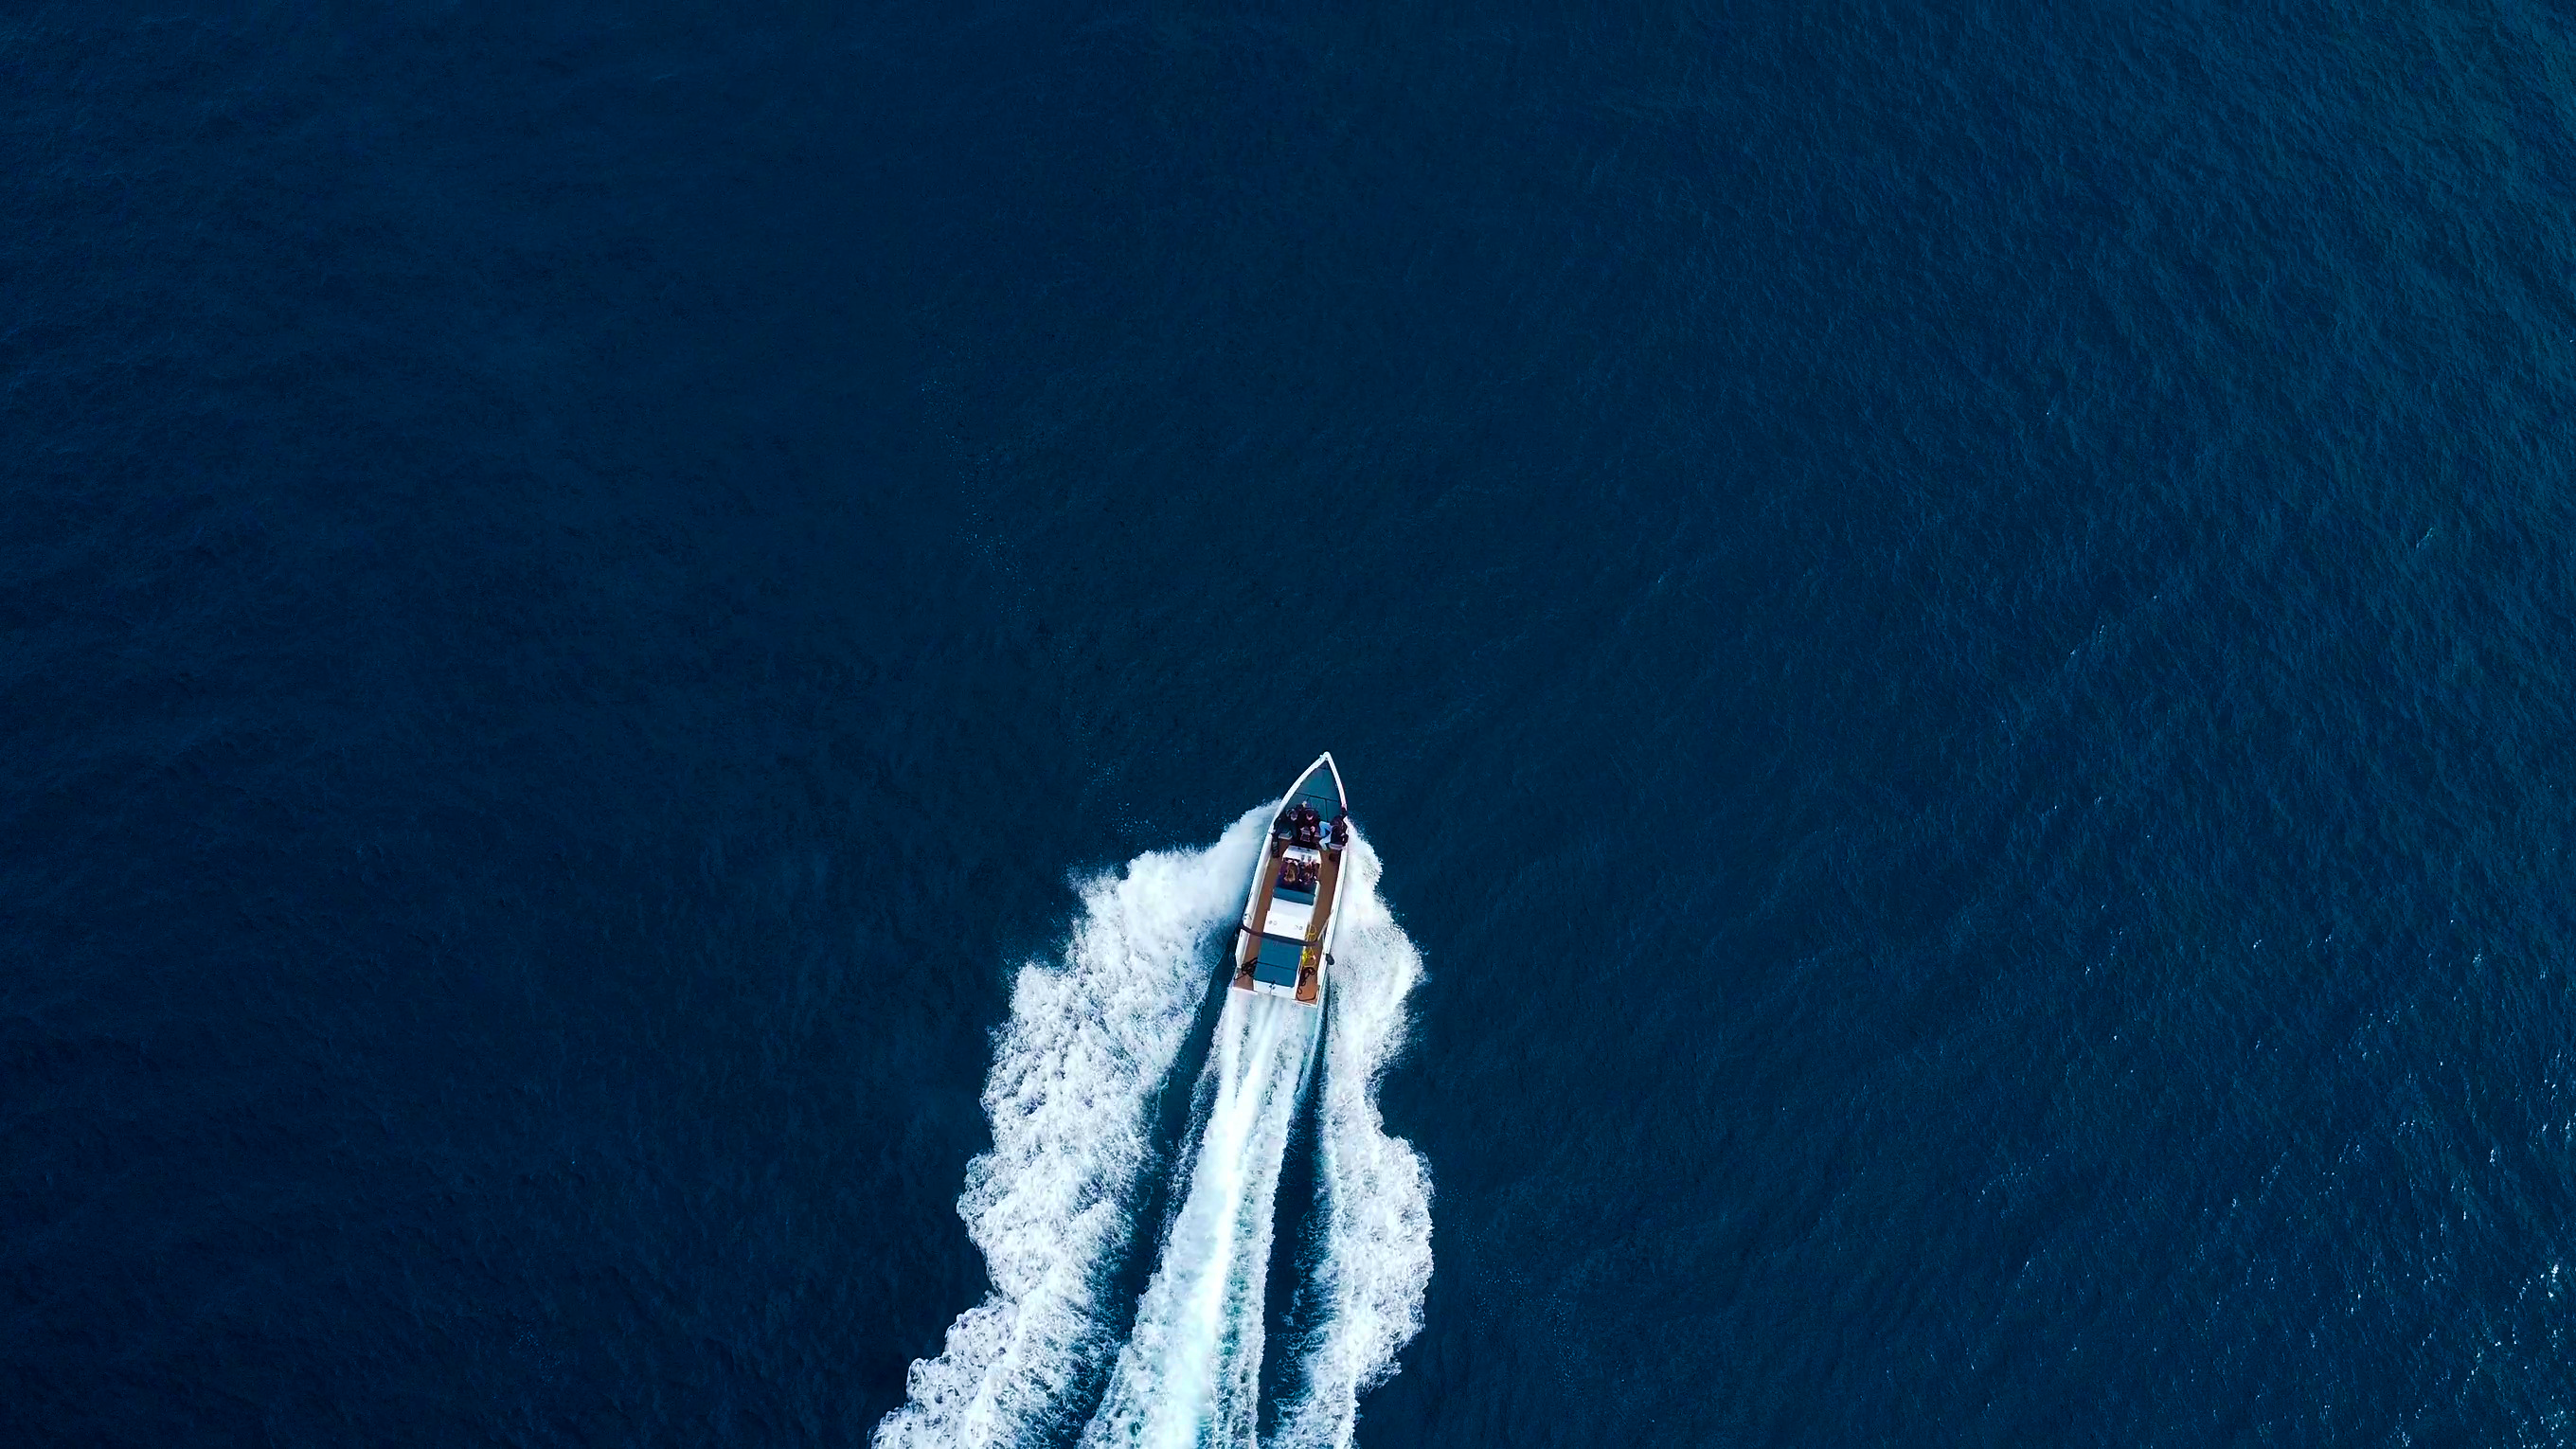 Portada de página web con fotografía aérea de un barco eléctrico con olas